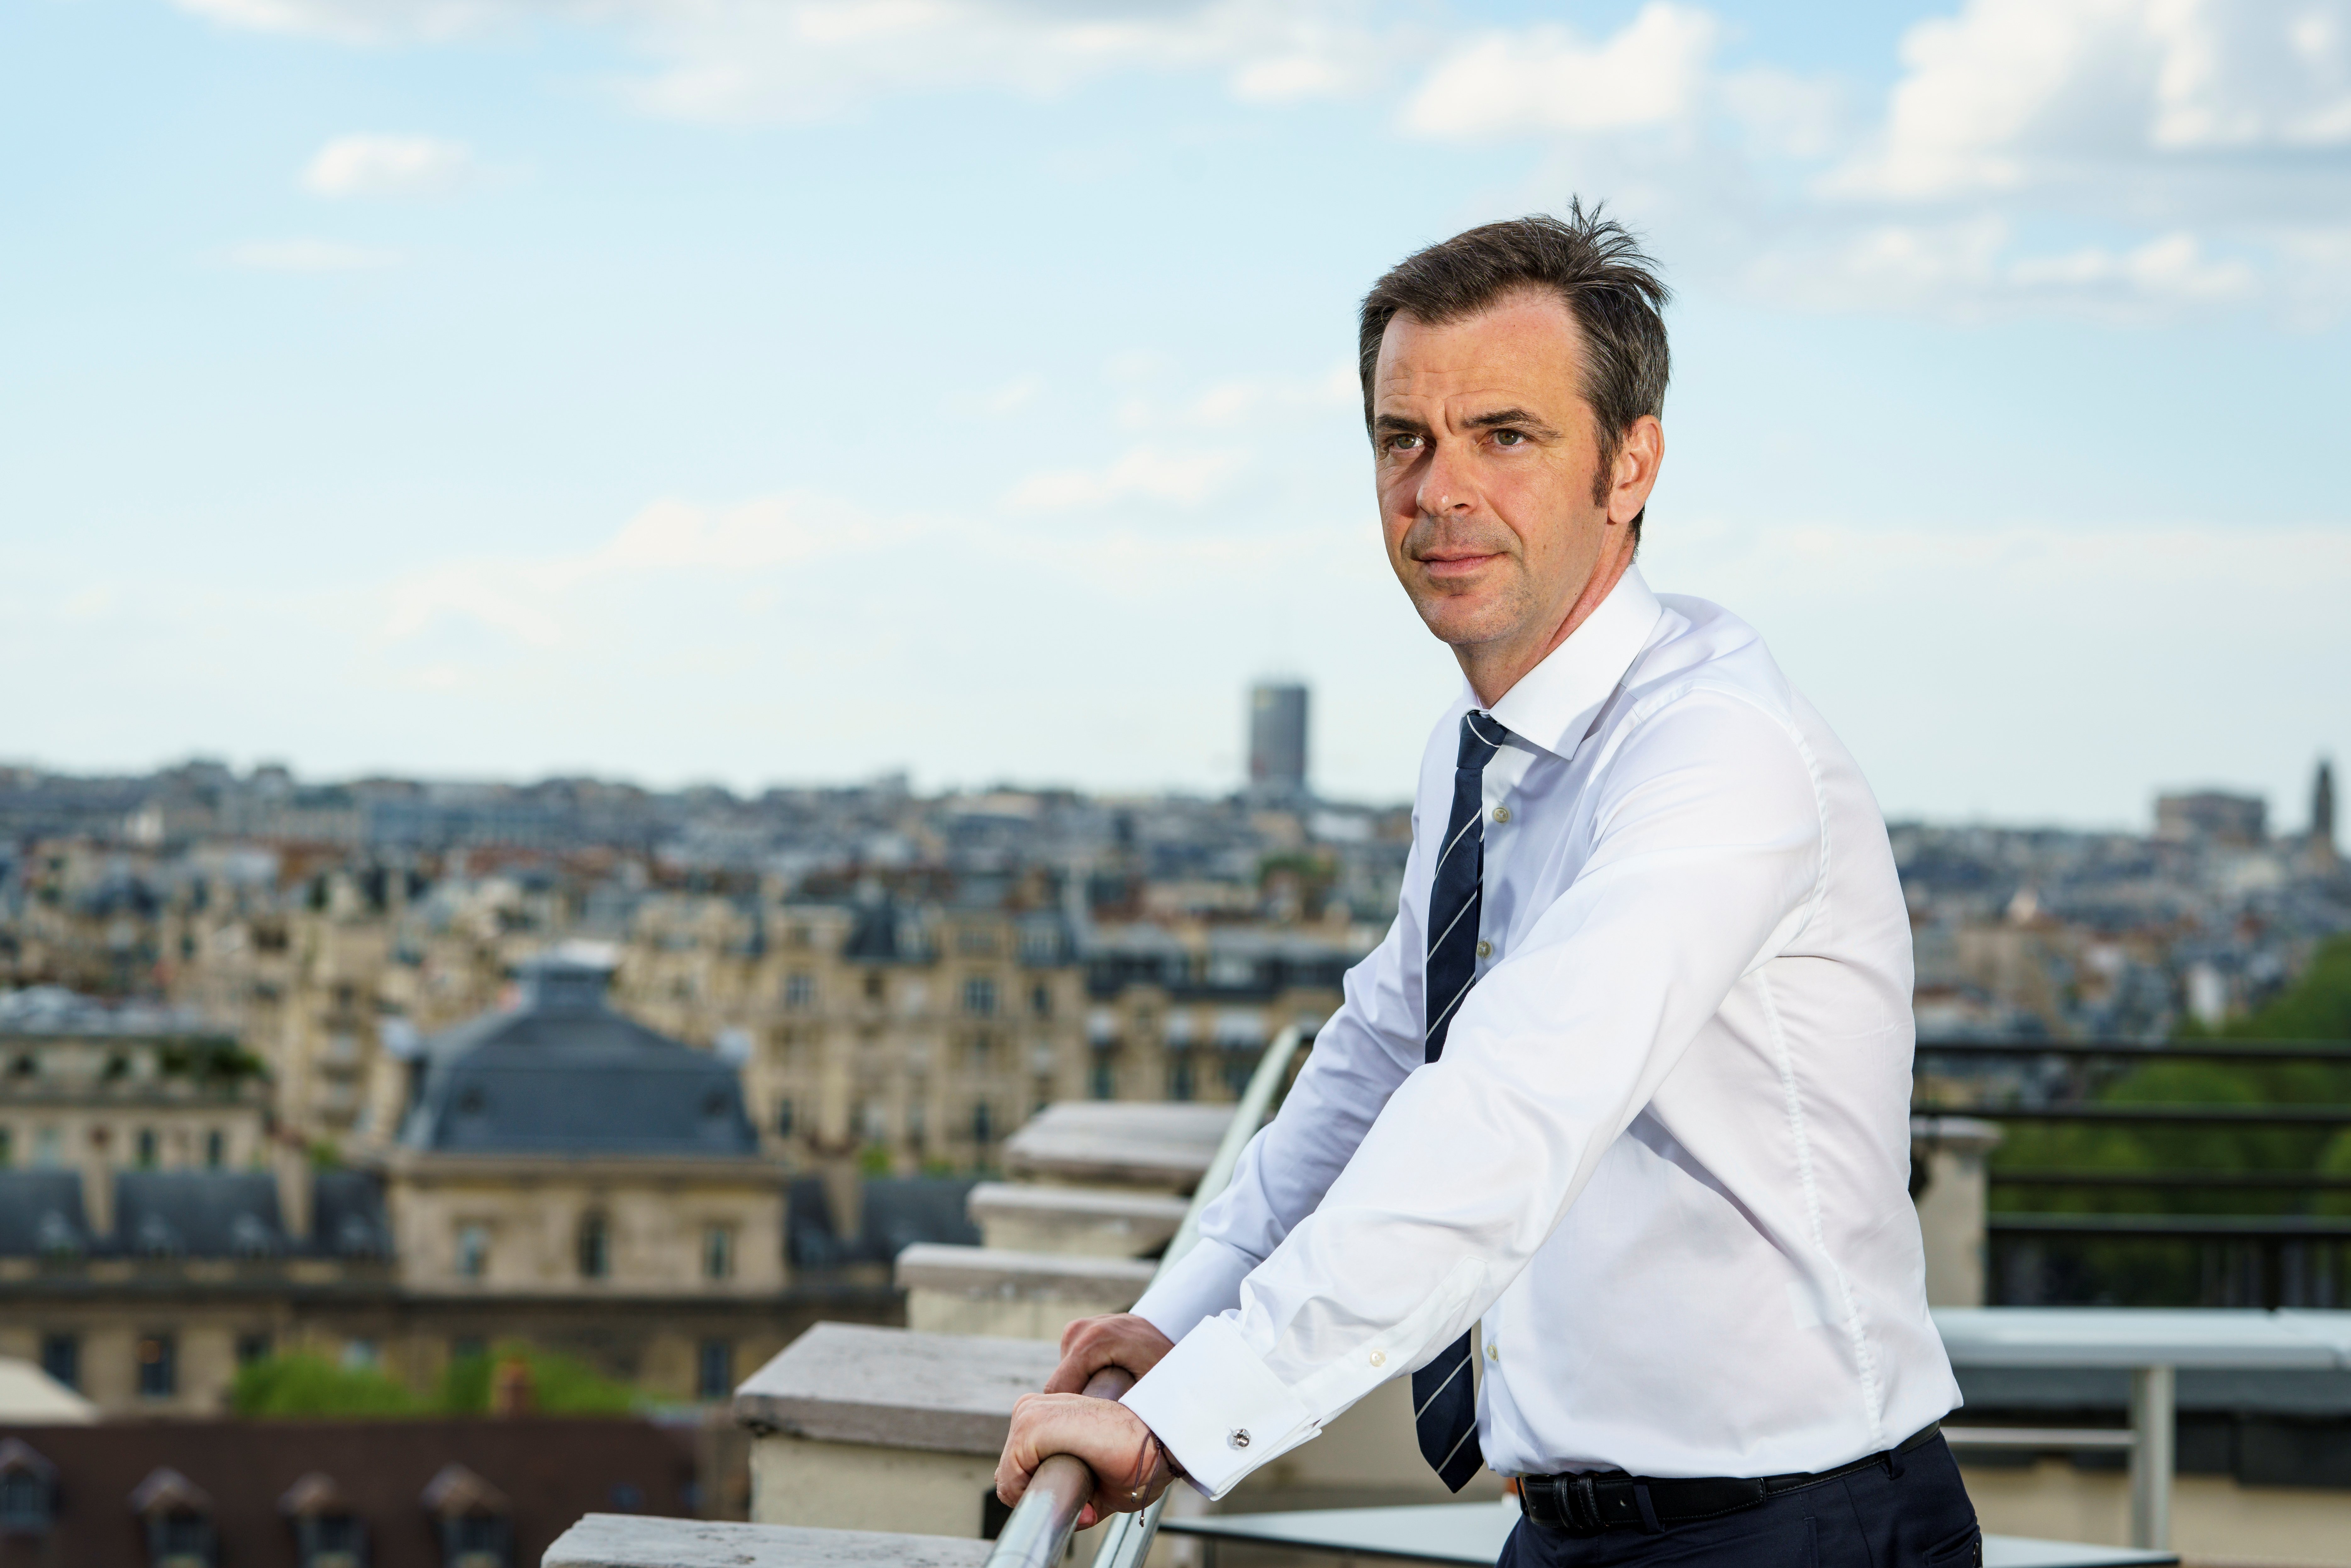 Olivier Veran, le ministre de la Santé, est photographié pour Paris Match à son ministère lors de la crise du coronavirus /covid 19 à Paris le 17 avril 2020. | Photo : Getty Images